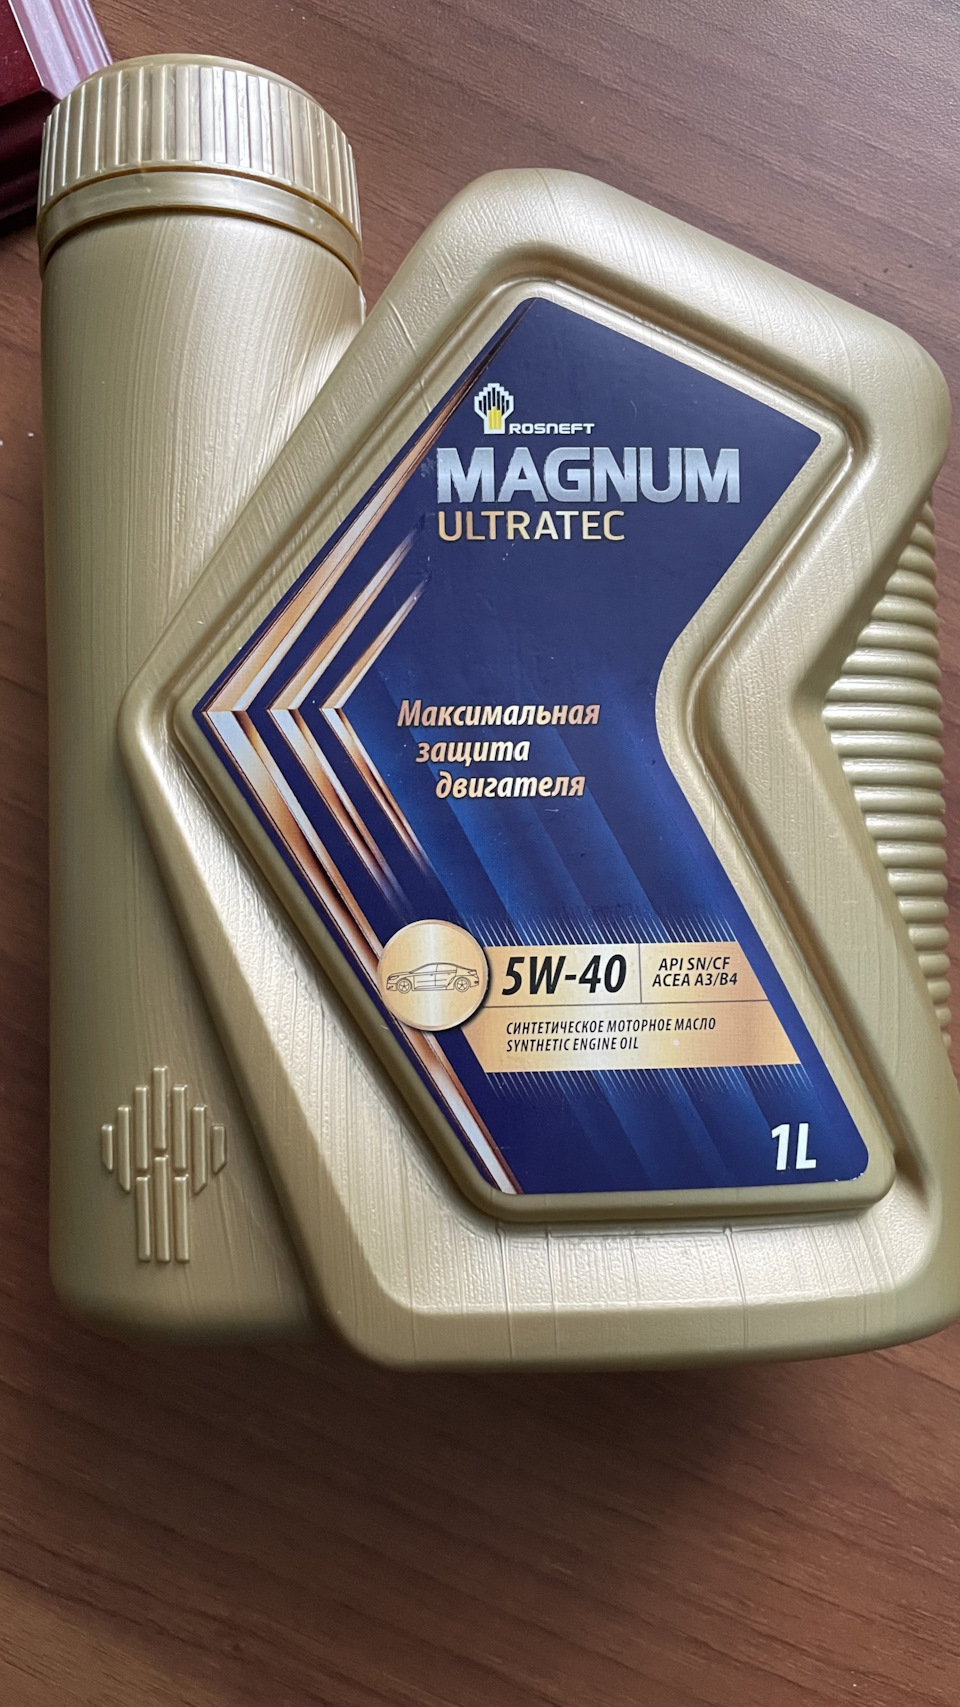 Rosneft Magnum Ultratec 5w40 реклама. Rosneft Magnum Ultratec. Упаковка моторного масла Magnum Ultratec. Справка от производитель моторного масла Magnum Ultratec. Масло магнум ультратек 5w40 отзывы